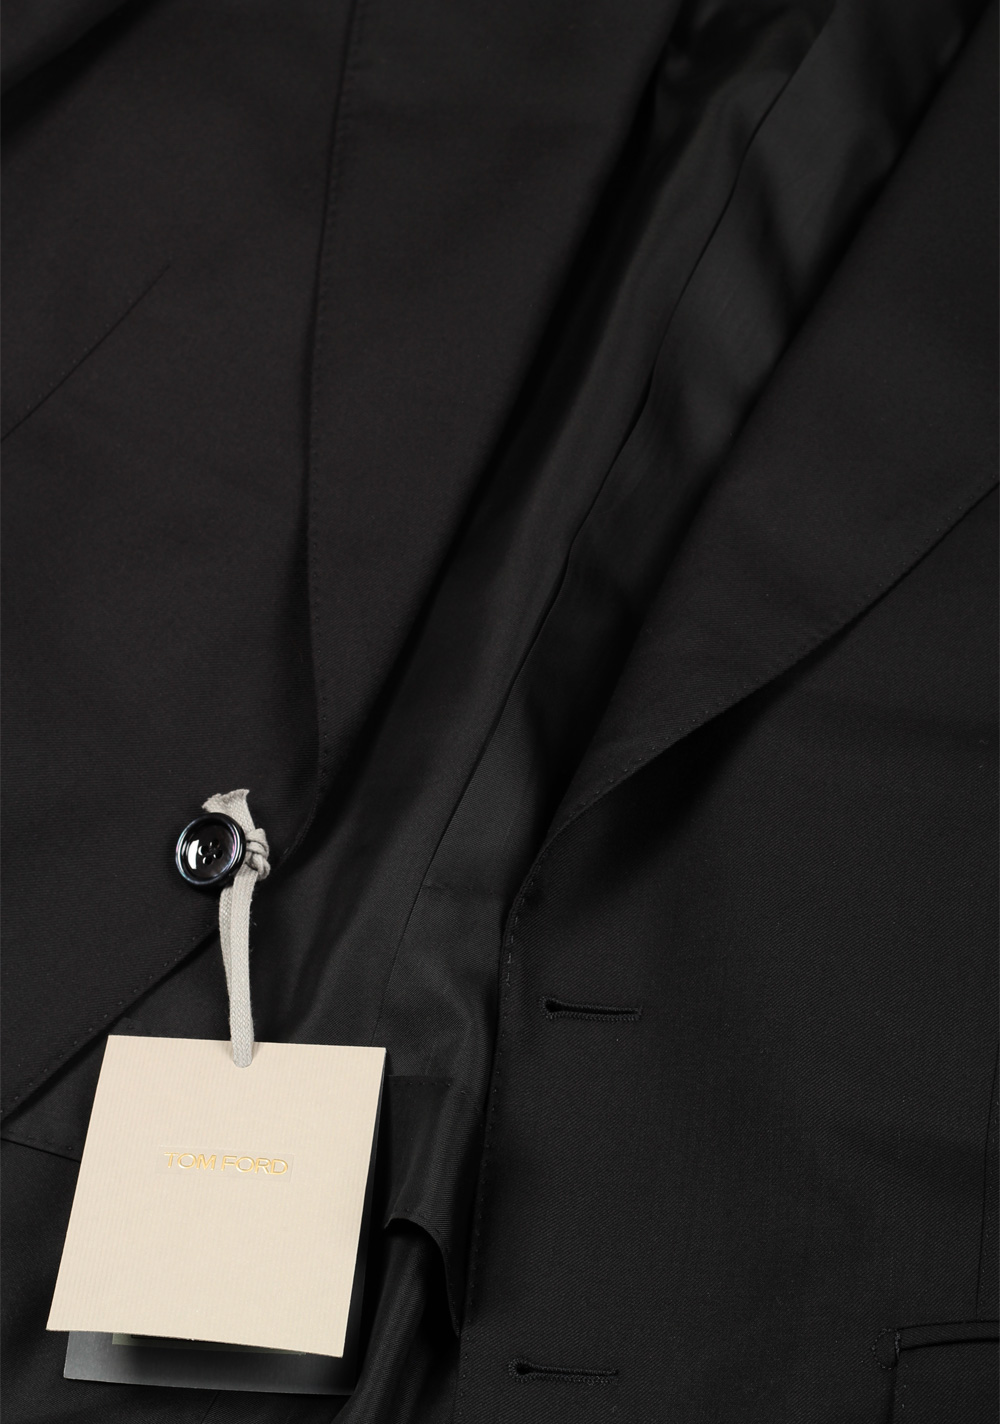 TOM FORD Shelton Black Suit Size 48 / 38R U.S. | Costume Limité